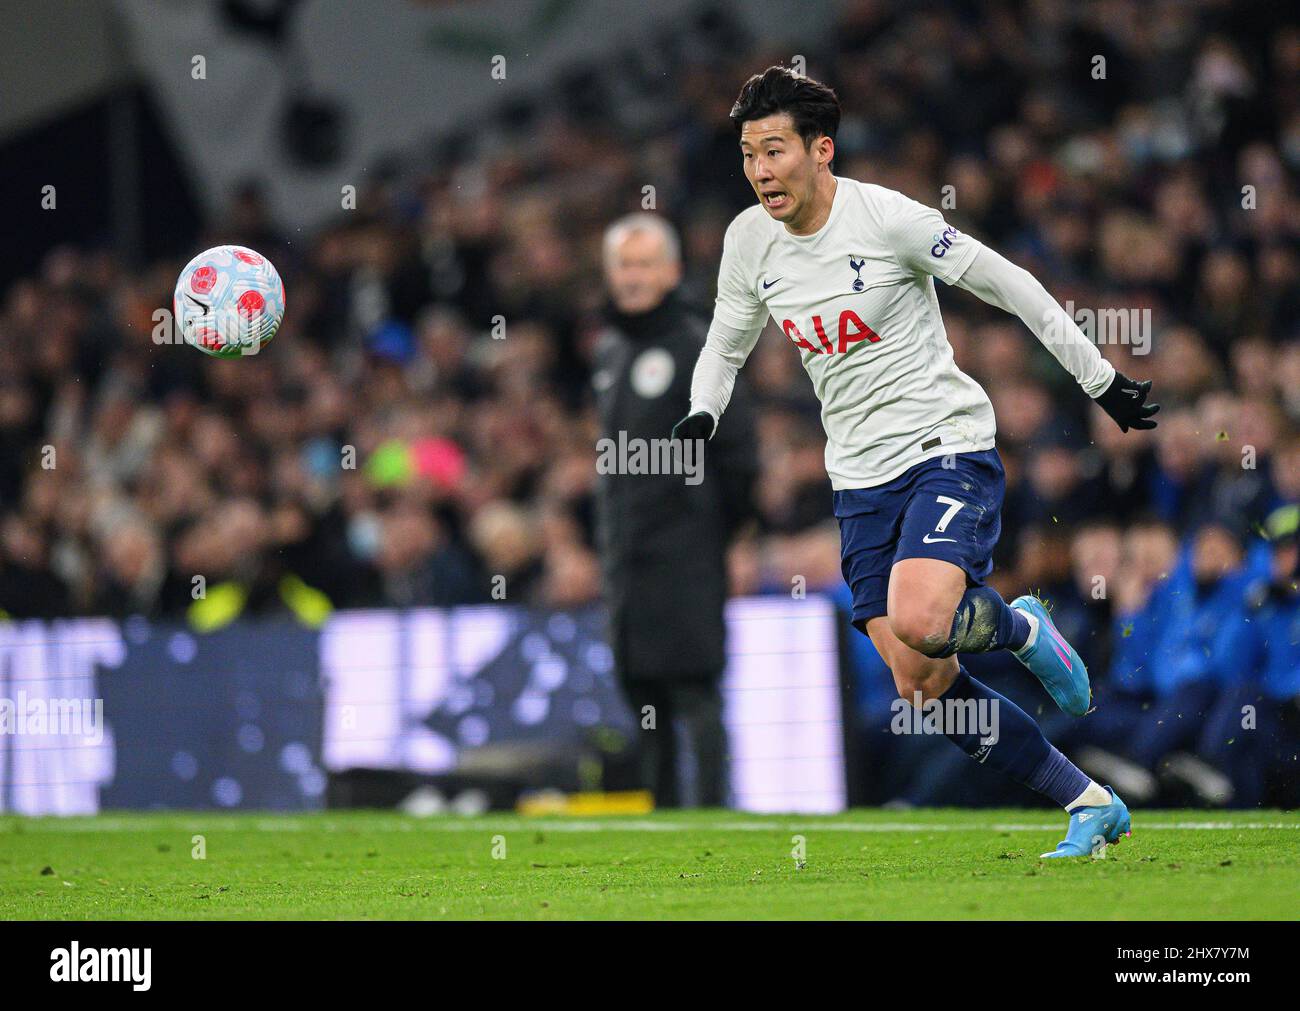 07 March 2022 - Tottenham Hotspur v Everton - Premier League - Tottenham Hotspur Stadium Tottenham Hotspur's Heung-Min Son during the Premier League Stock Photo